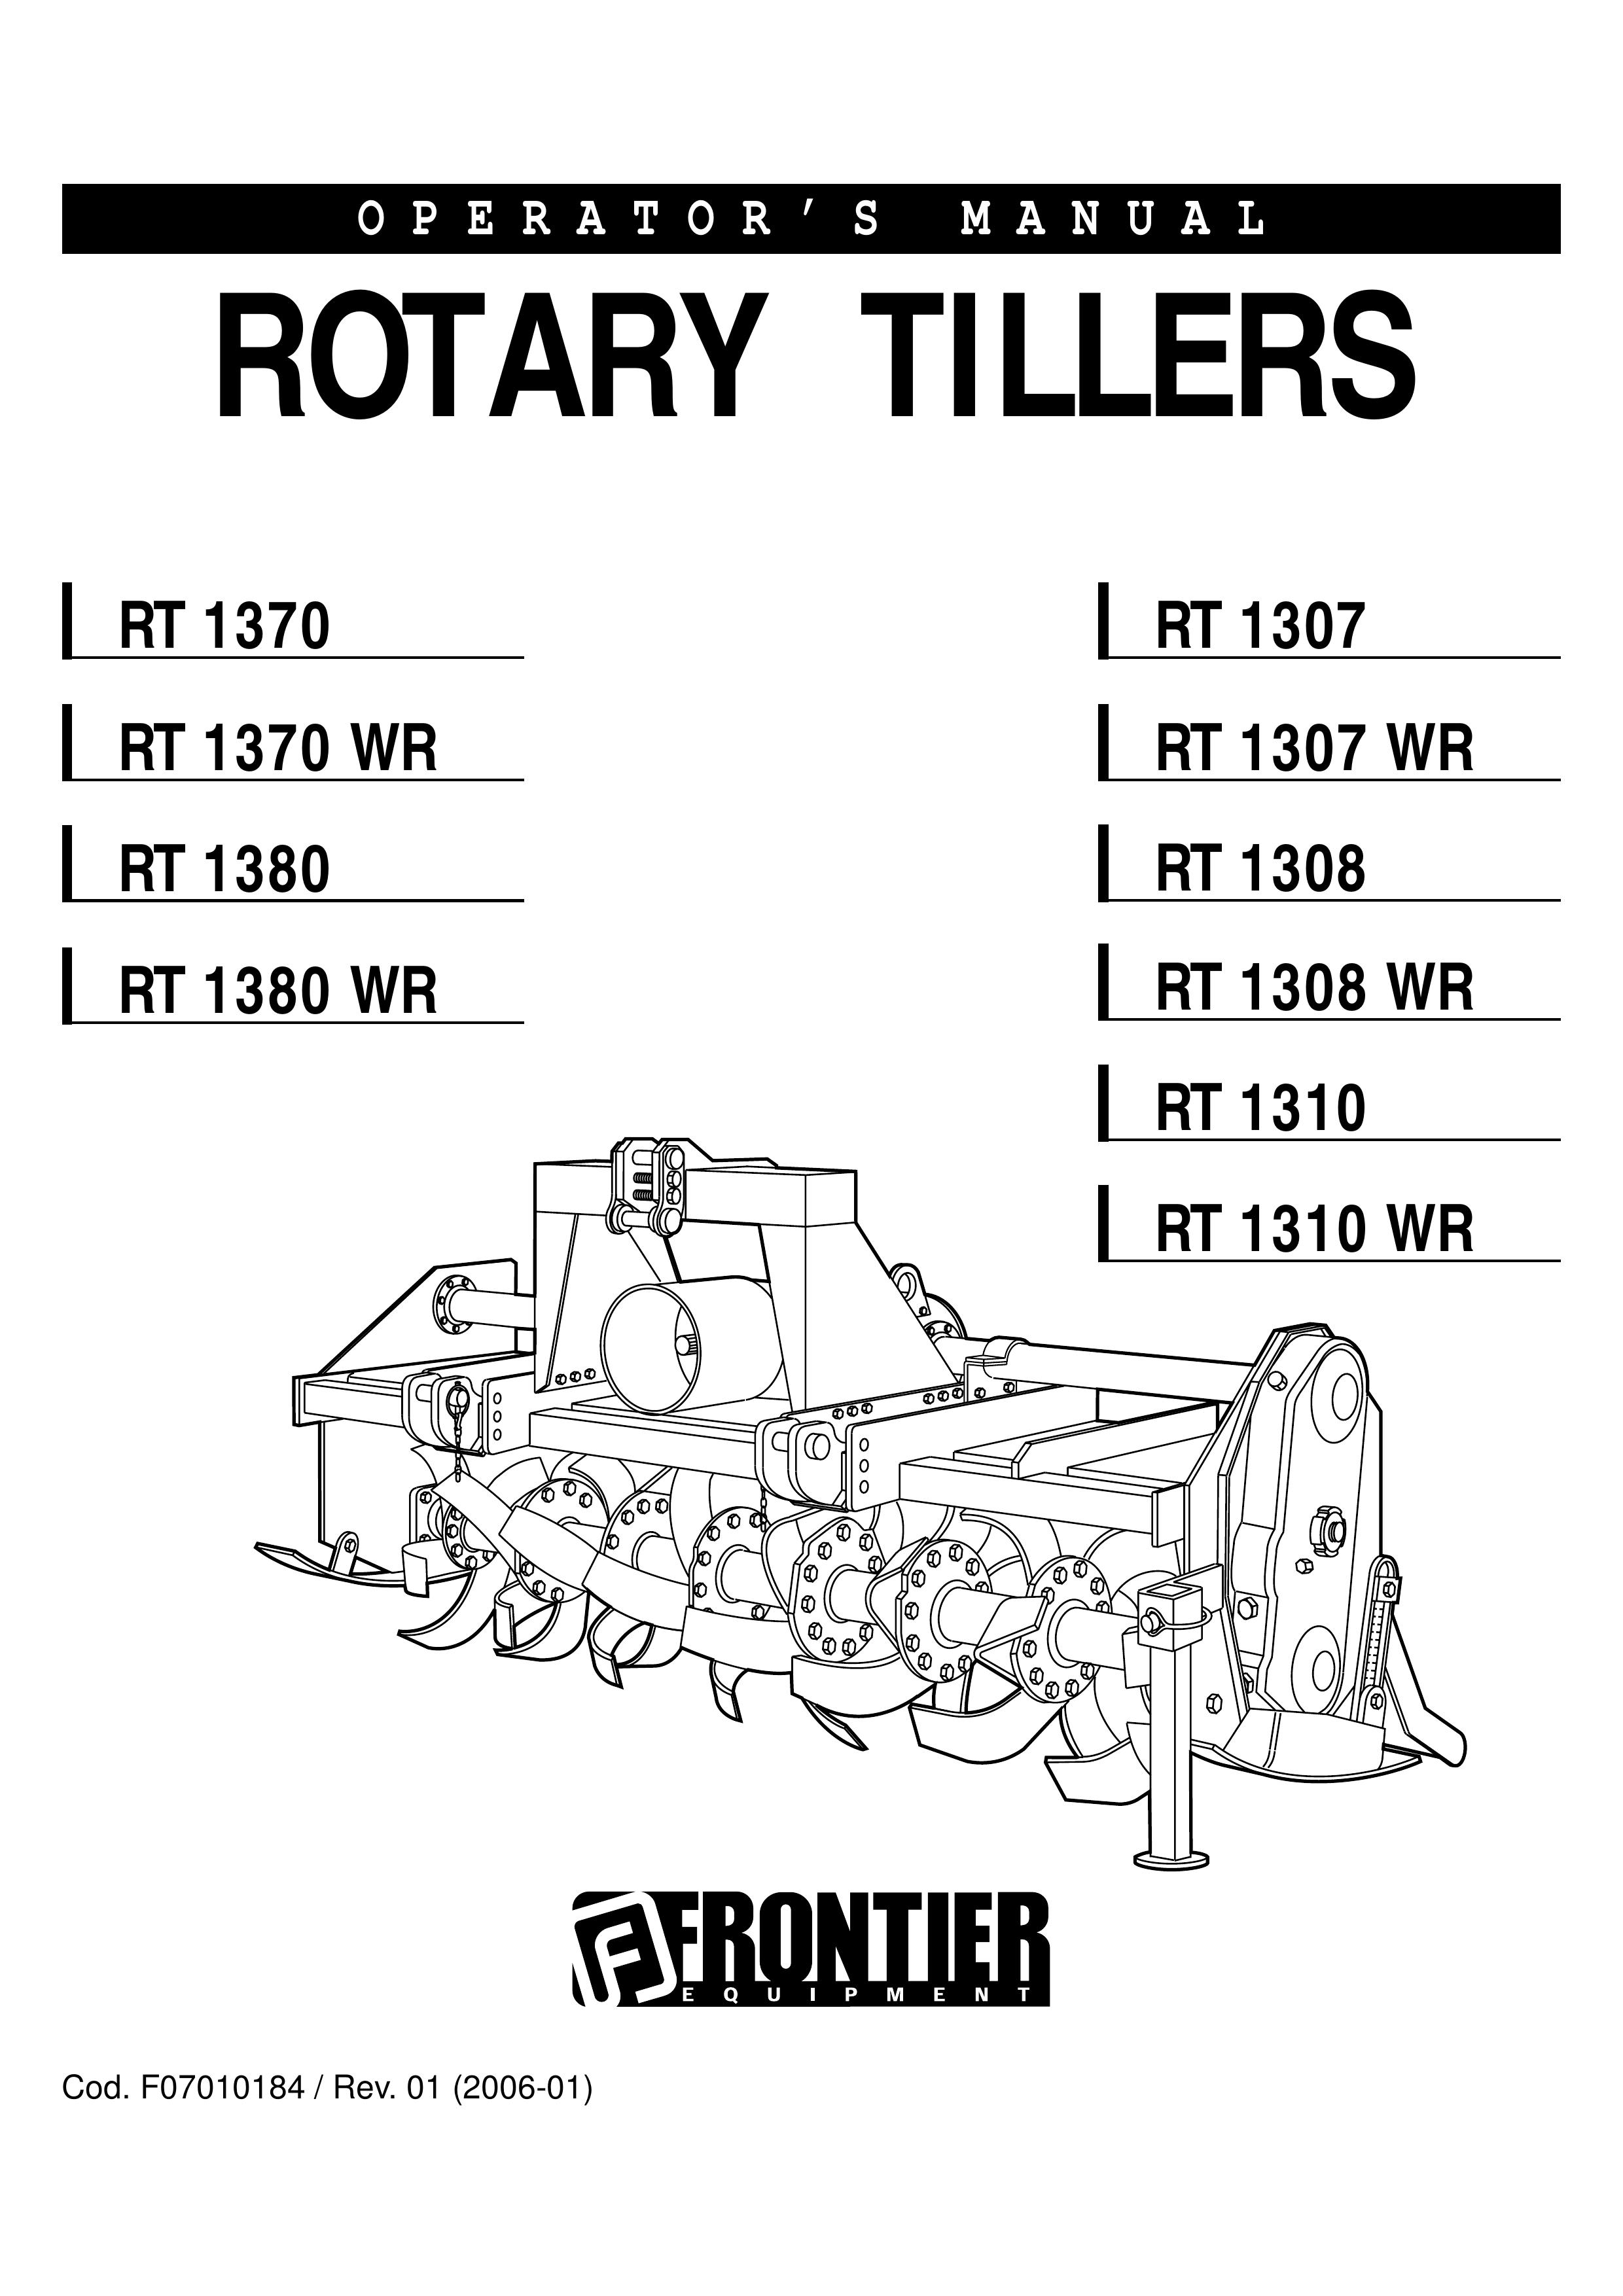 John Deere RT 1380 Tiller User Manual